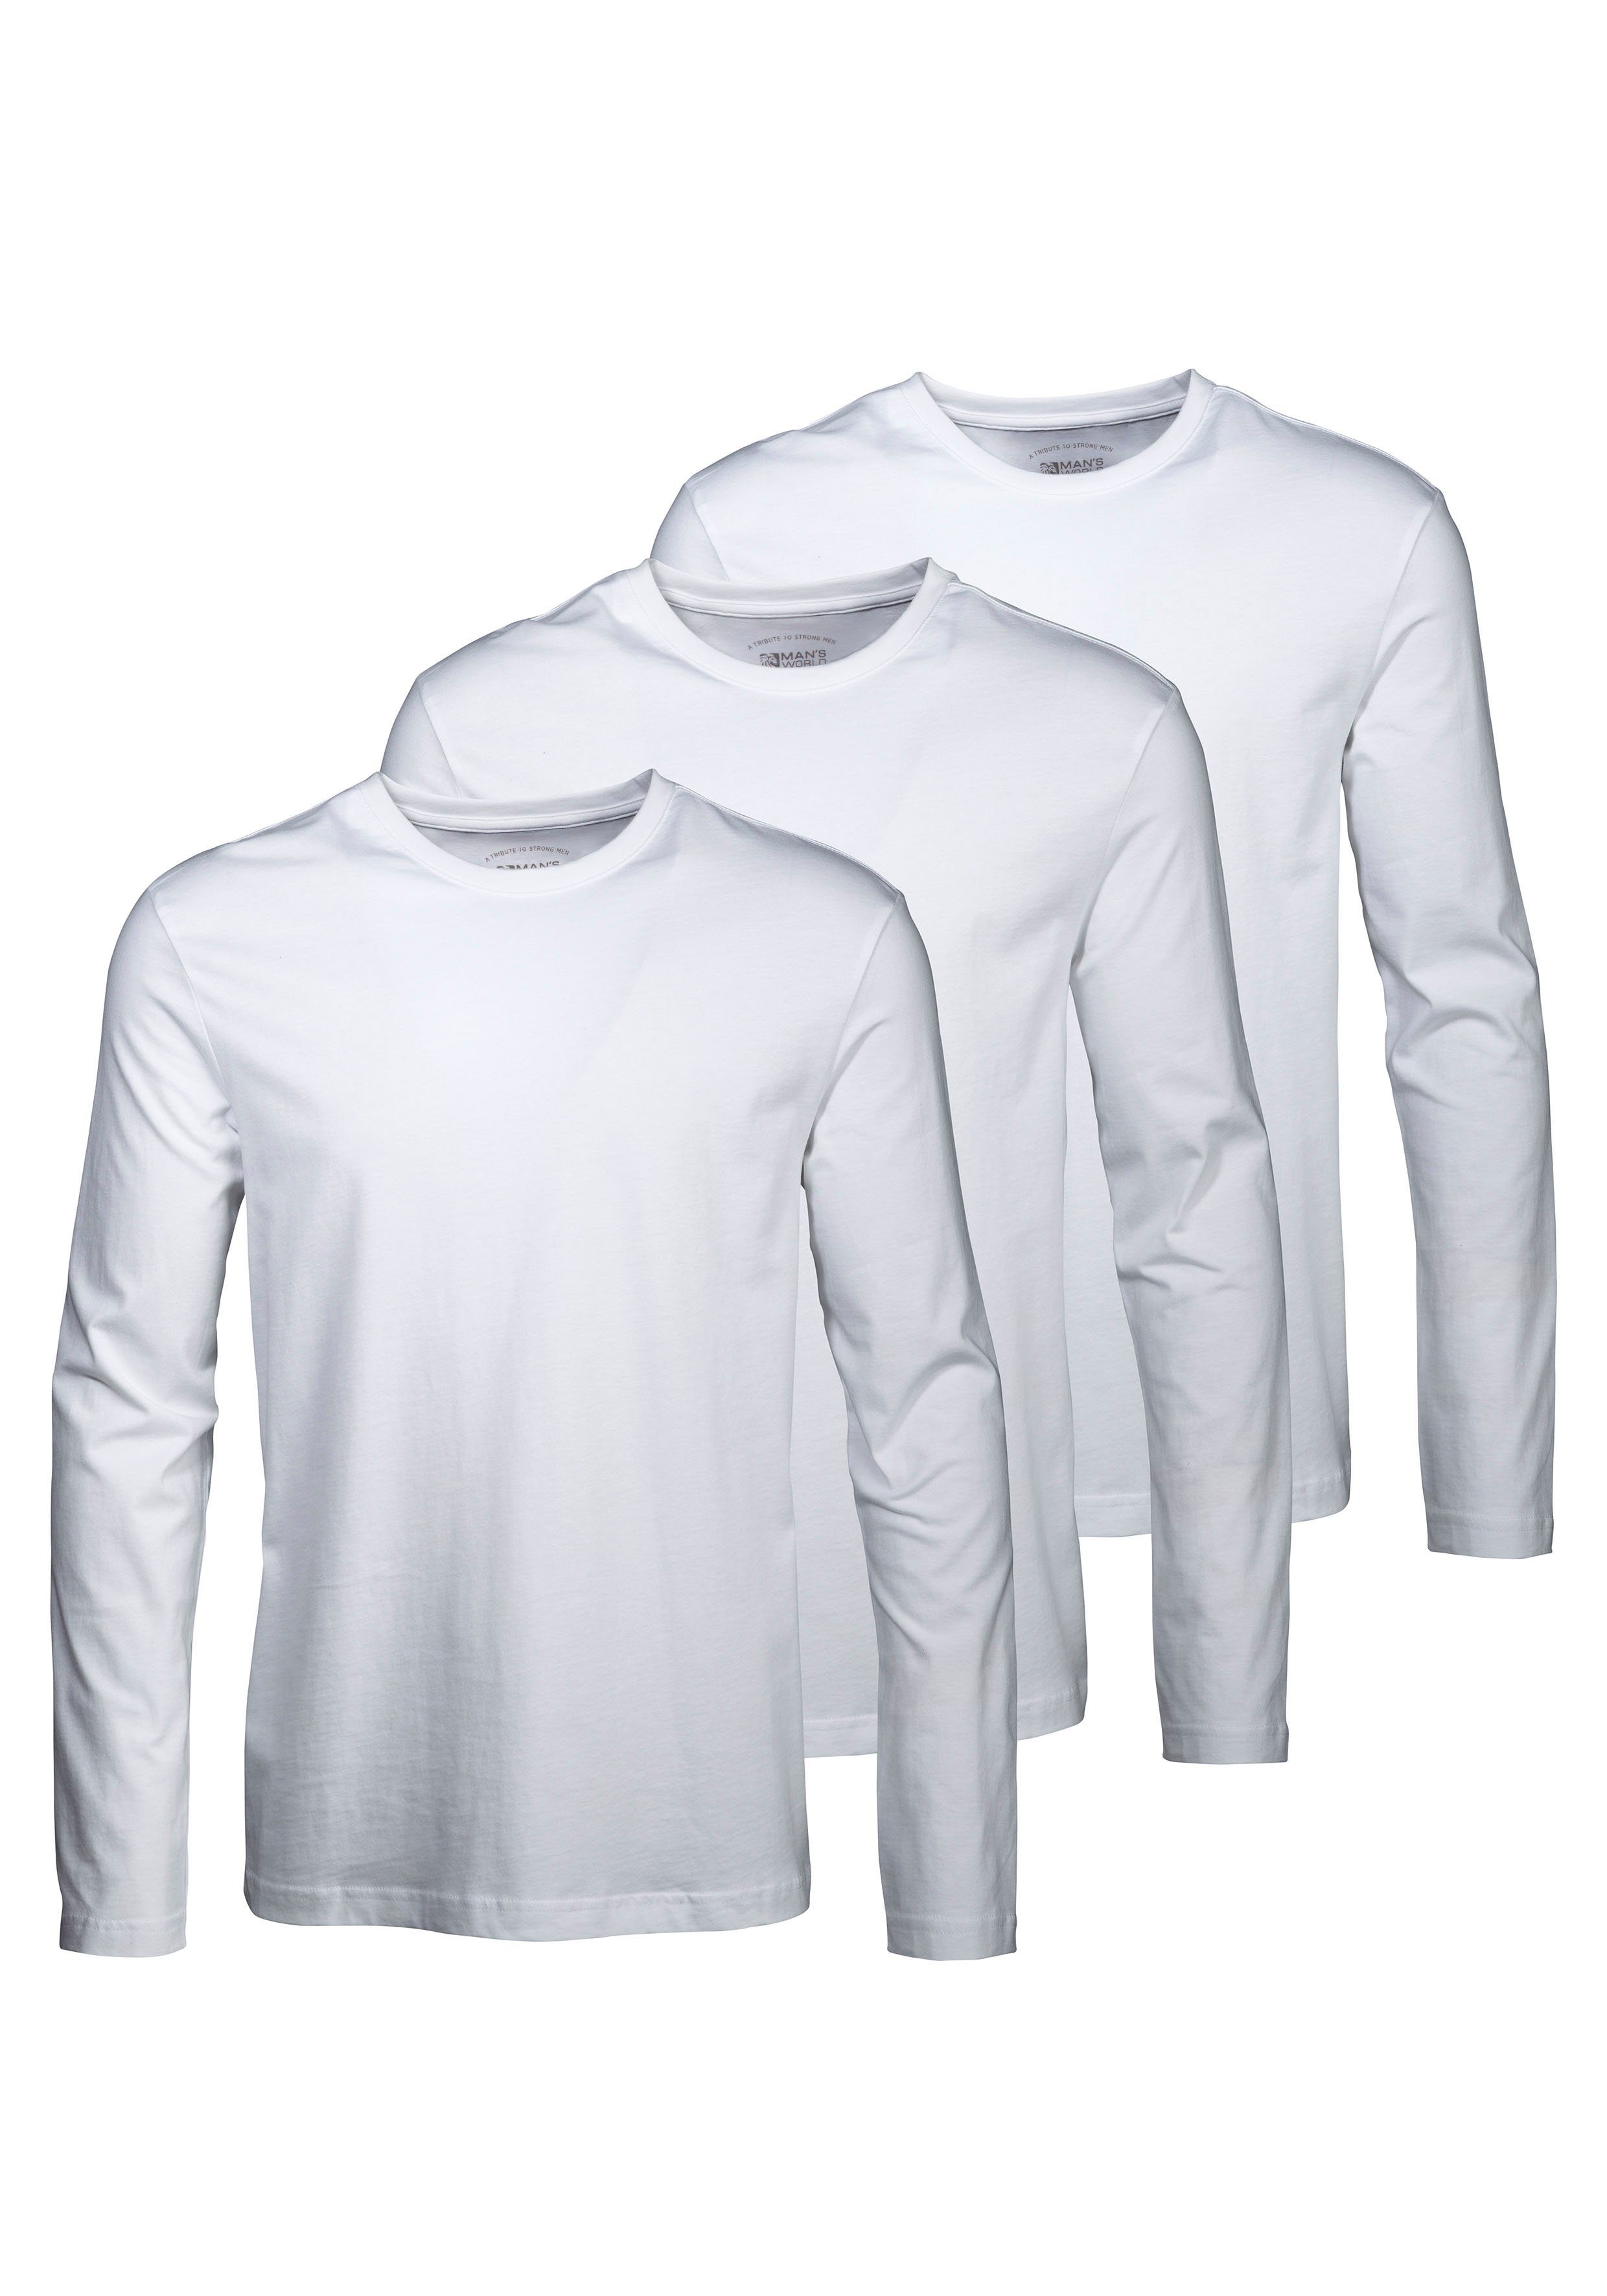 Man's World Langarmshirt (Packung, 3-tlg., 3er-Pack) aus reiner Baumwolle weiß | Rundhalsshirts